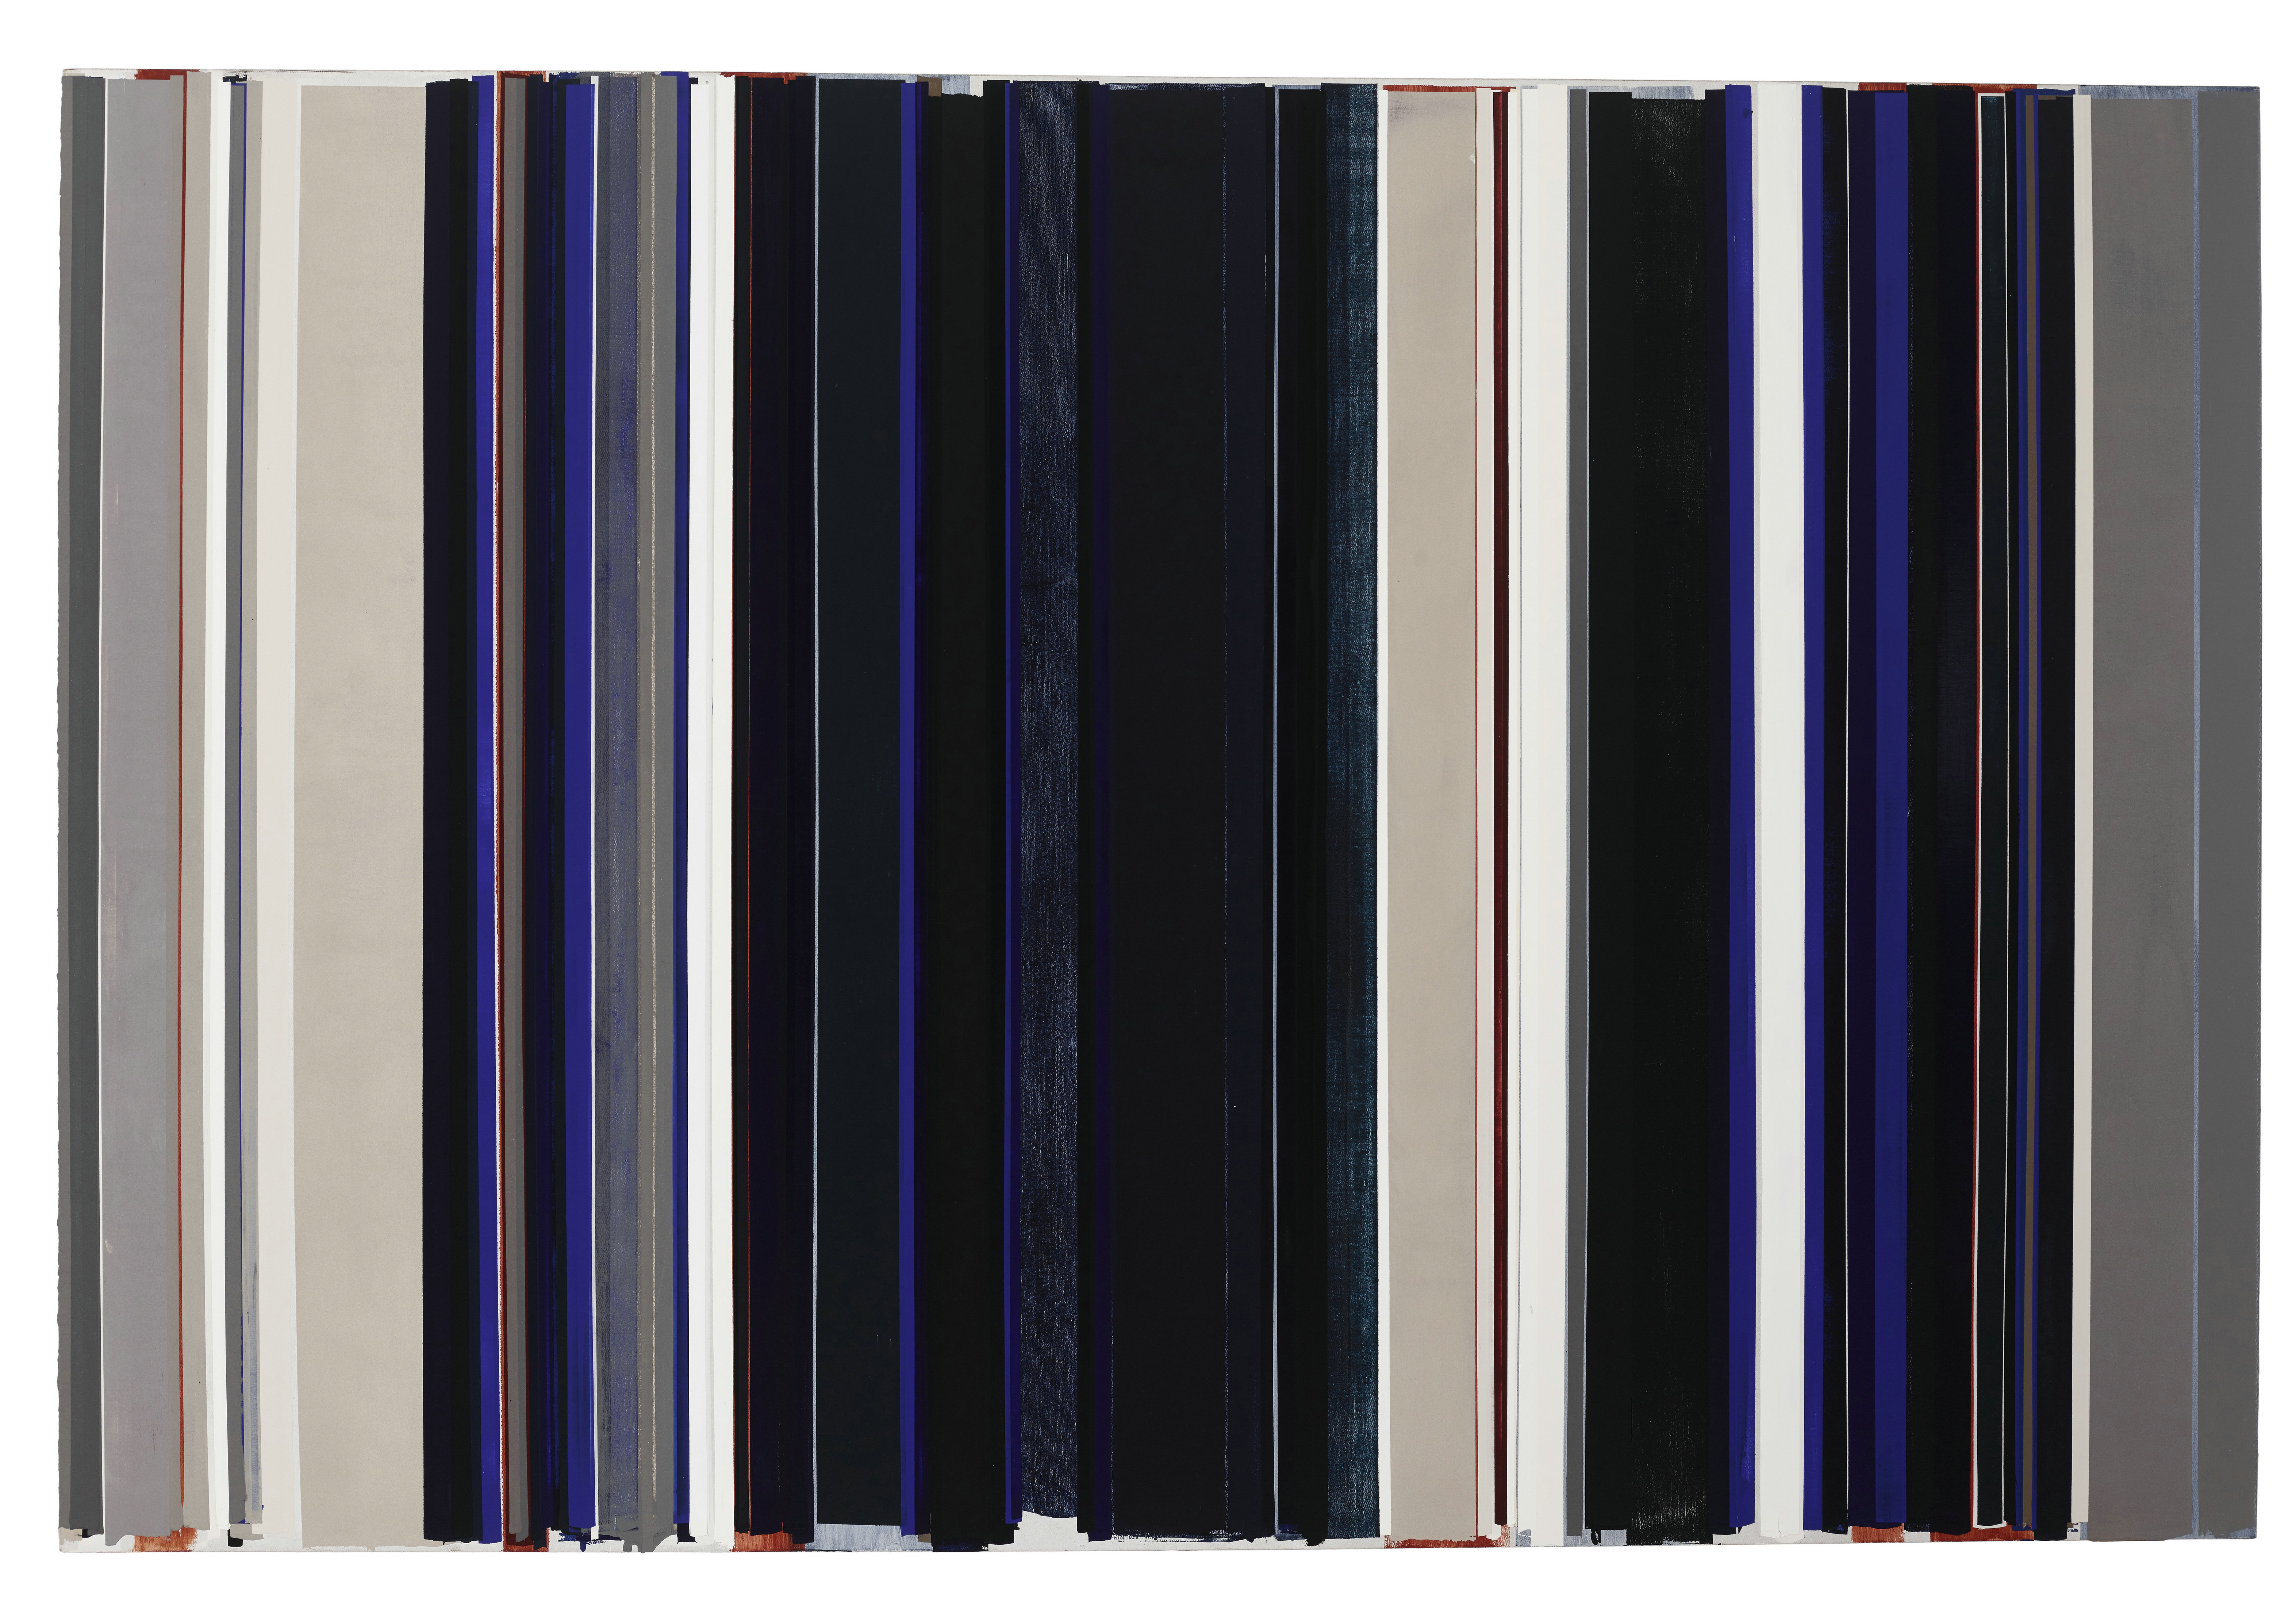 刘可 2015第7号 2015 布面油画、丙烯、织物染料、水性染料 200×300cm